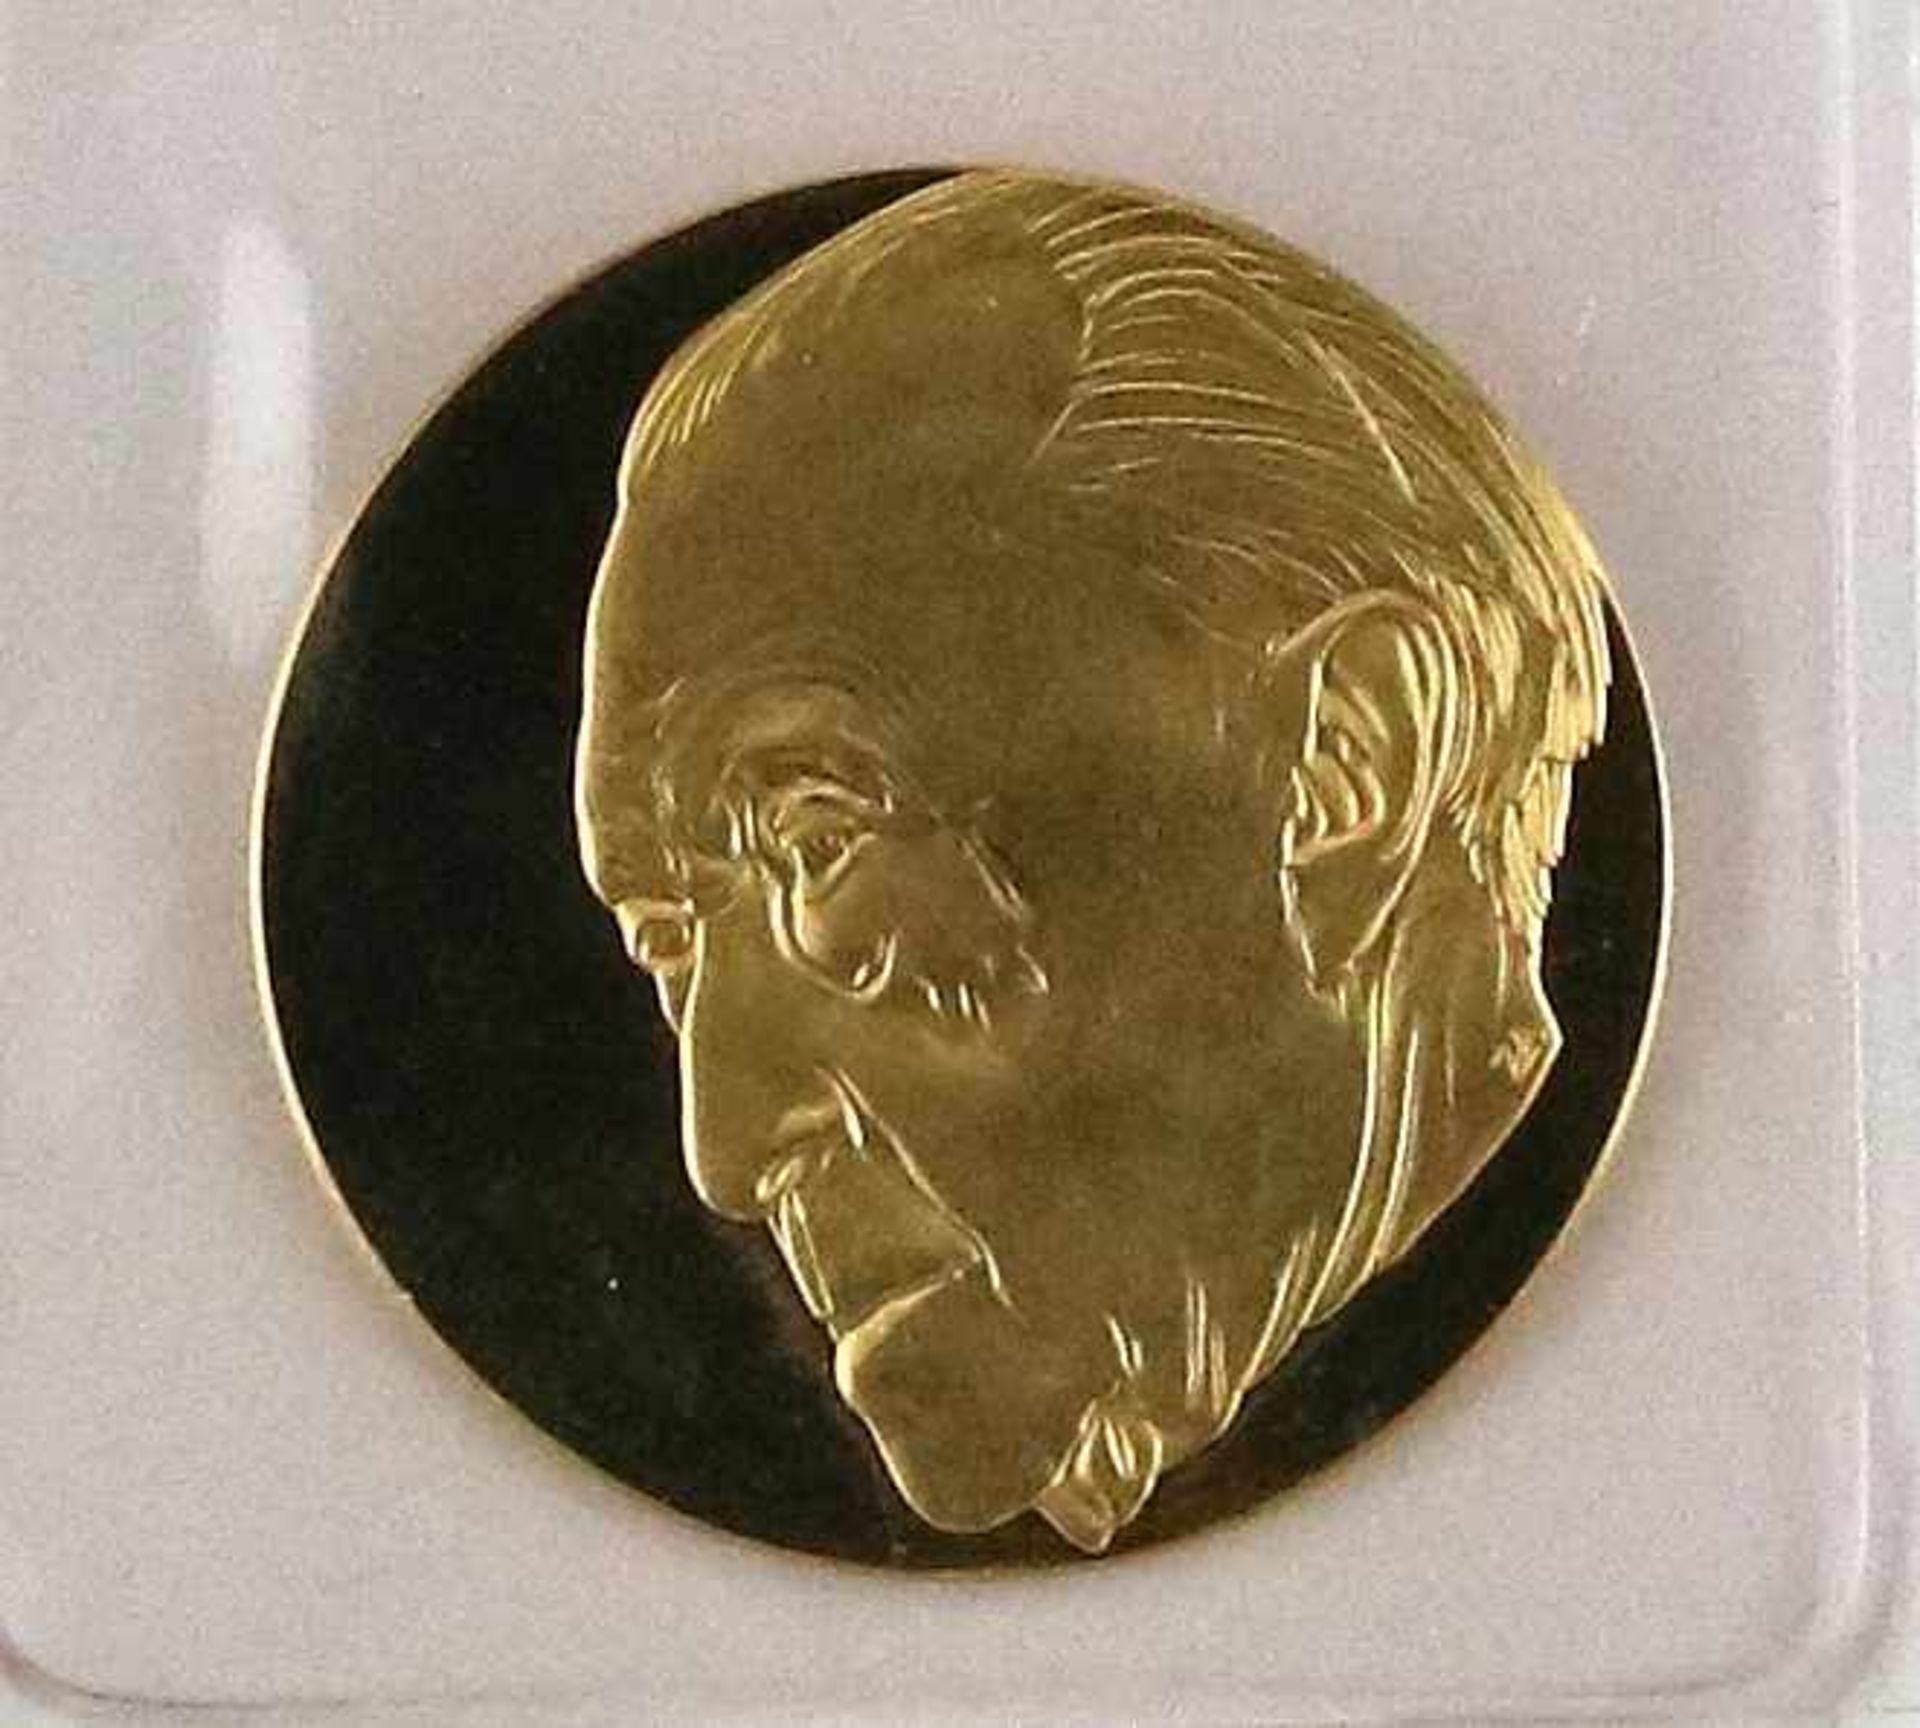 Goldmedaille100 Jahre Konrad-Adenauer-Stiftung 1976. GG 999,9 HH. Durchmesser ca. 26 mm, Gewicht ca. - Bild 2 aus 2